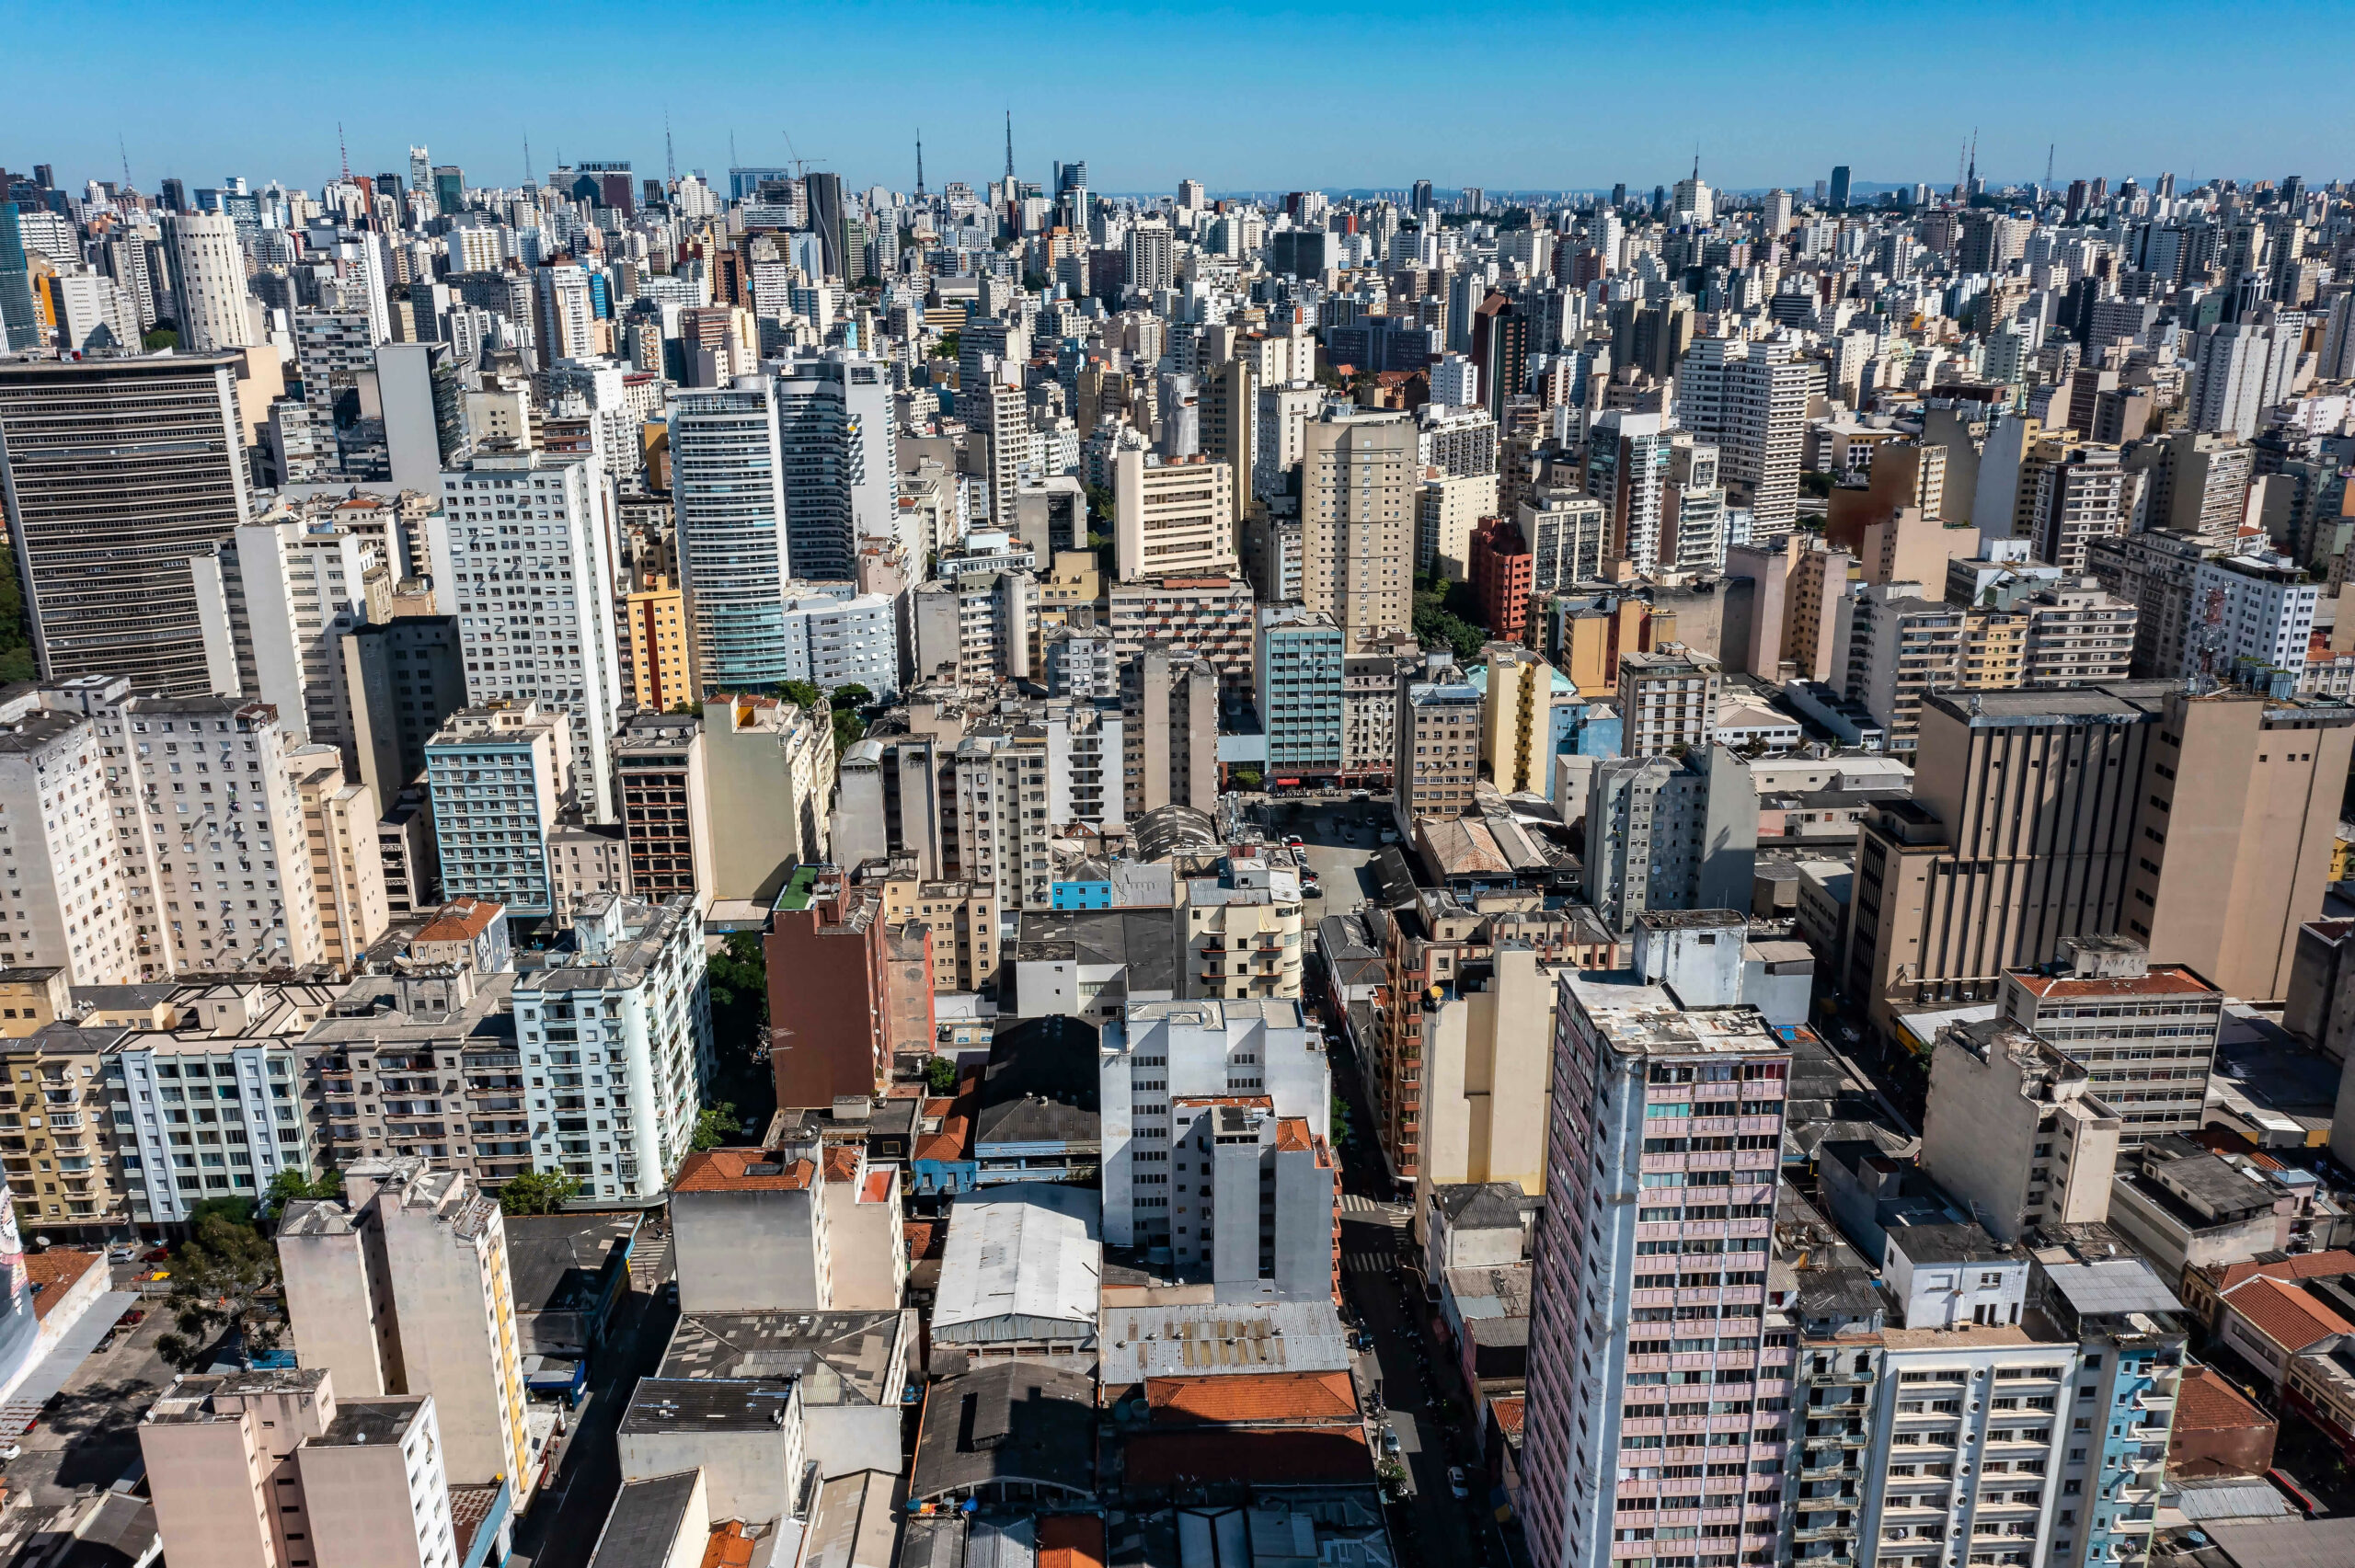 Vista aérea de São Paulo tomada por prédios altos